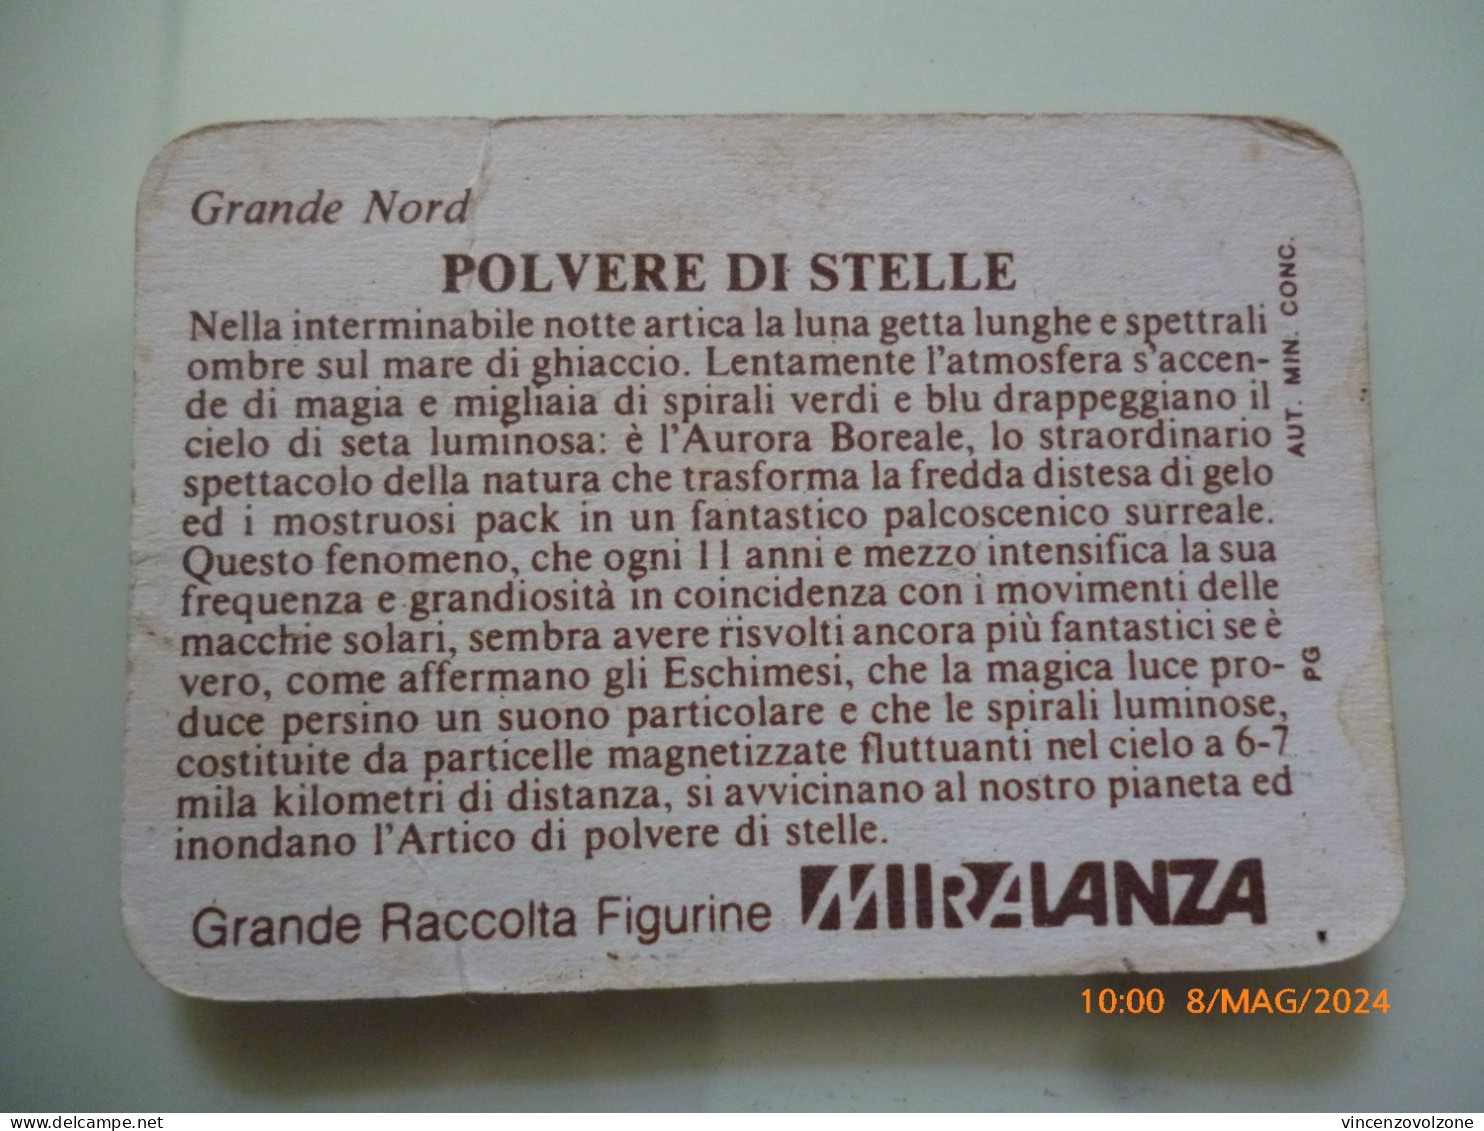 Figurina "MIRALANZA OLANDESINA 5 PUNTI POLVERE DI STELLE Serie Grande Nord" - Advertising